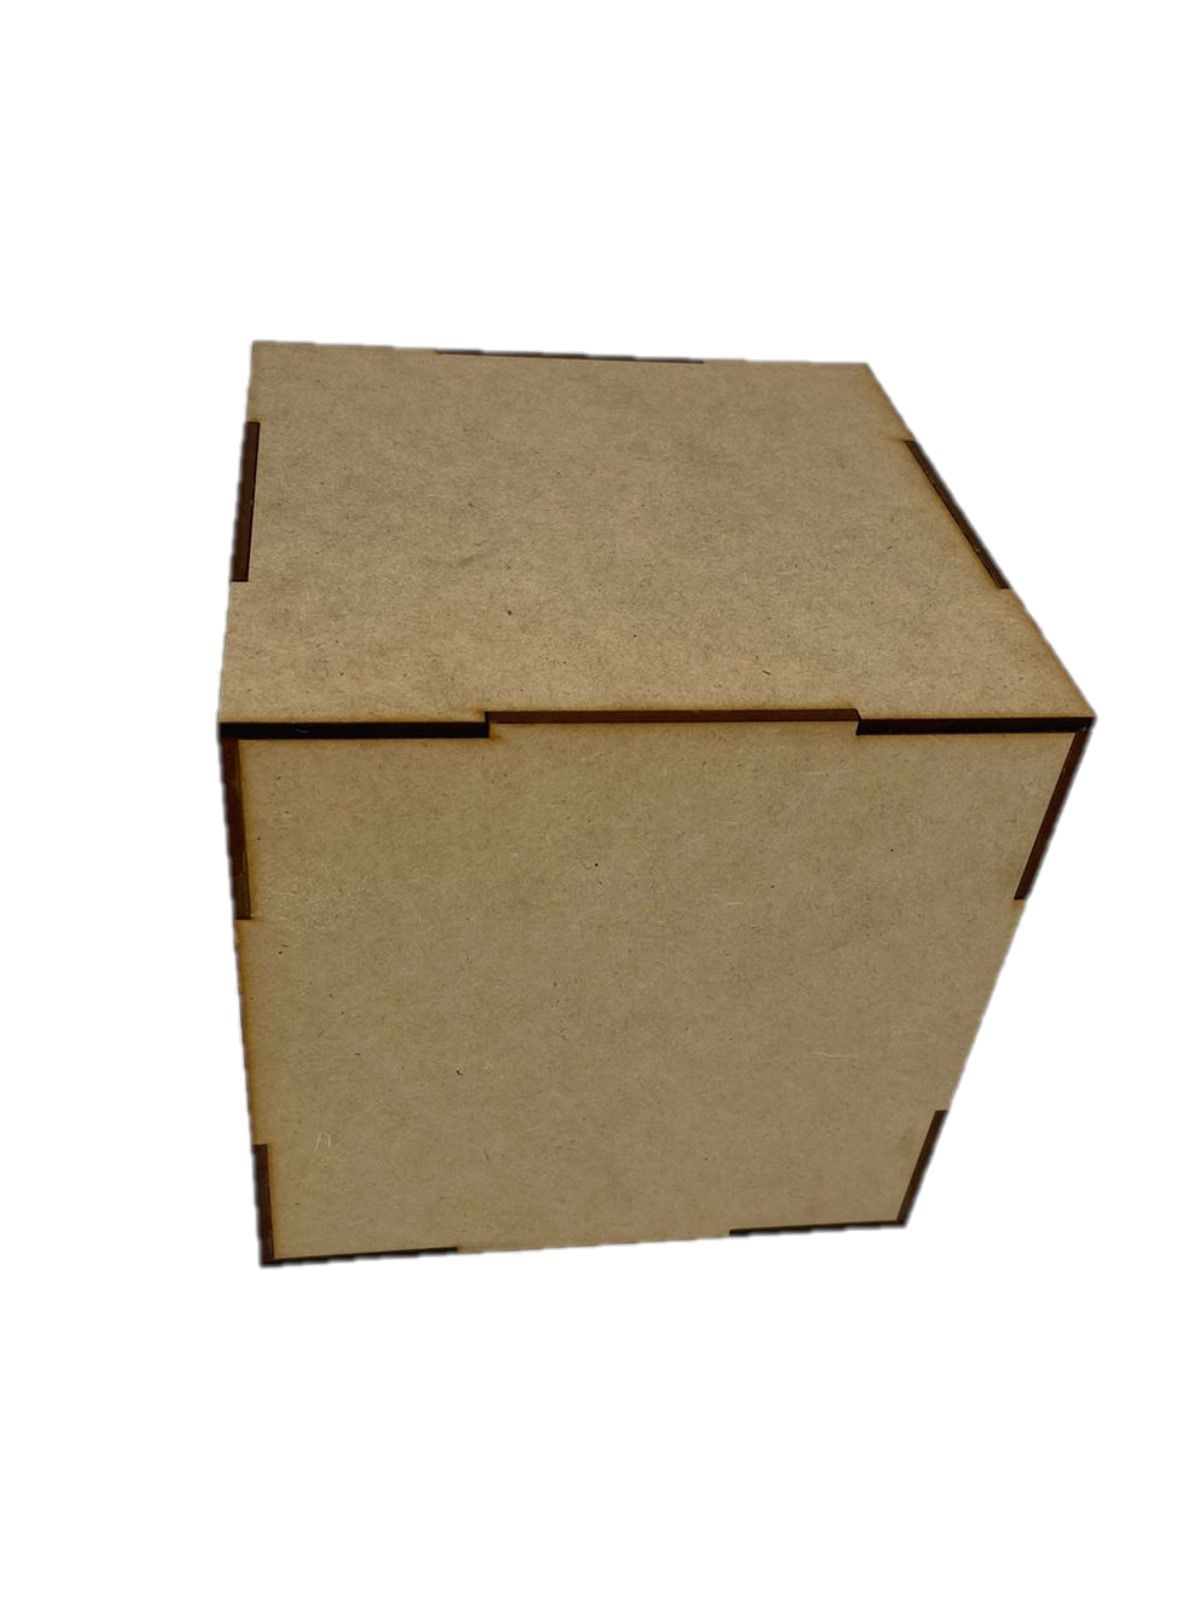 Caixa Cubo 10x10x10 cm Decoração em MDF - Atelie Arte Coisas - A Maior Loja  de Artesanato do Brasil